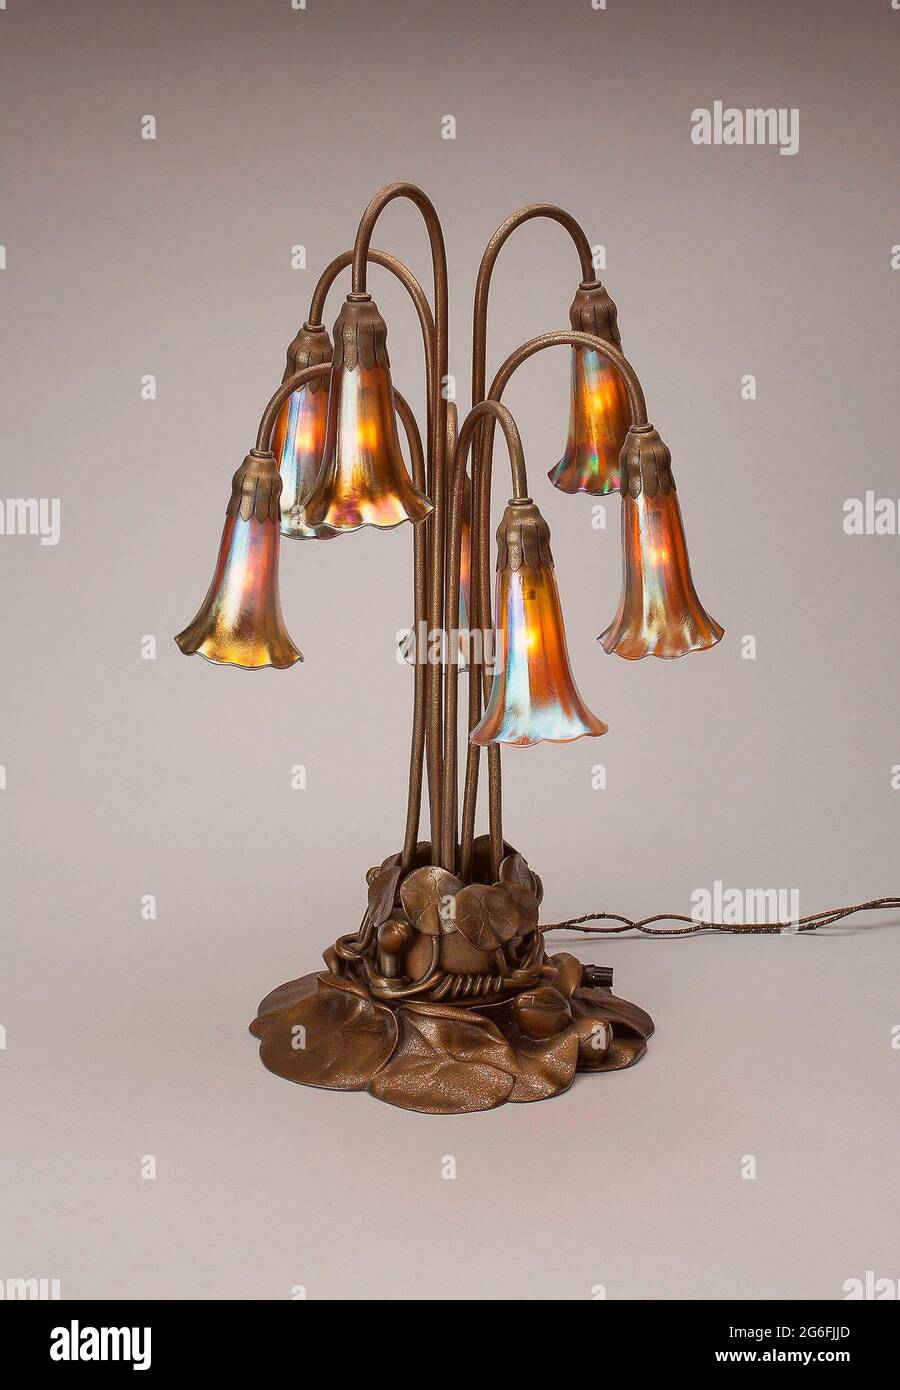 Autore: Tiffany Studios. Lily Lamp - 1902/17 - Tiffany Studios American, 1902 - 1932 Corona, New York. Vetro e bronzo Favrile. 1902 - 1917. Uniti Foto Stock